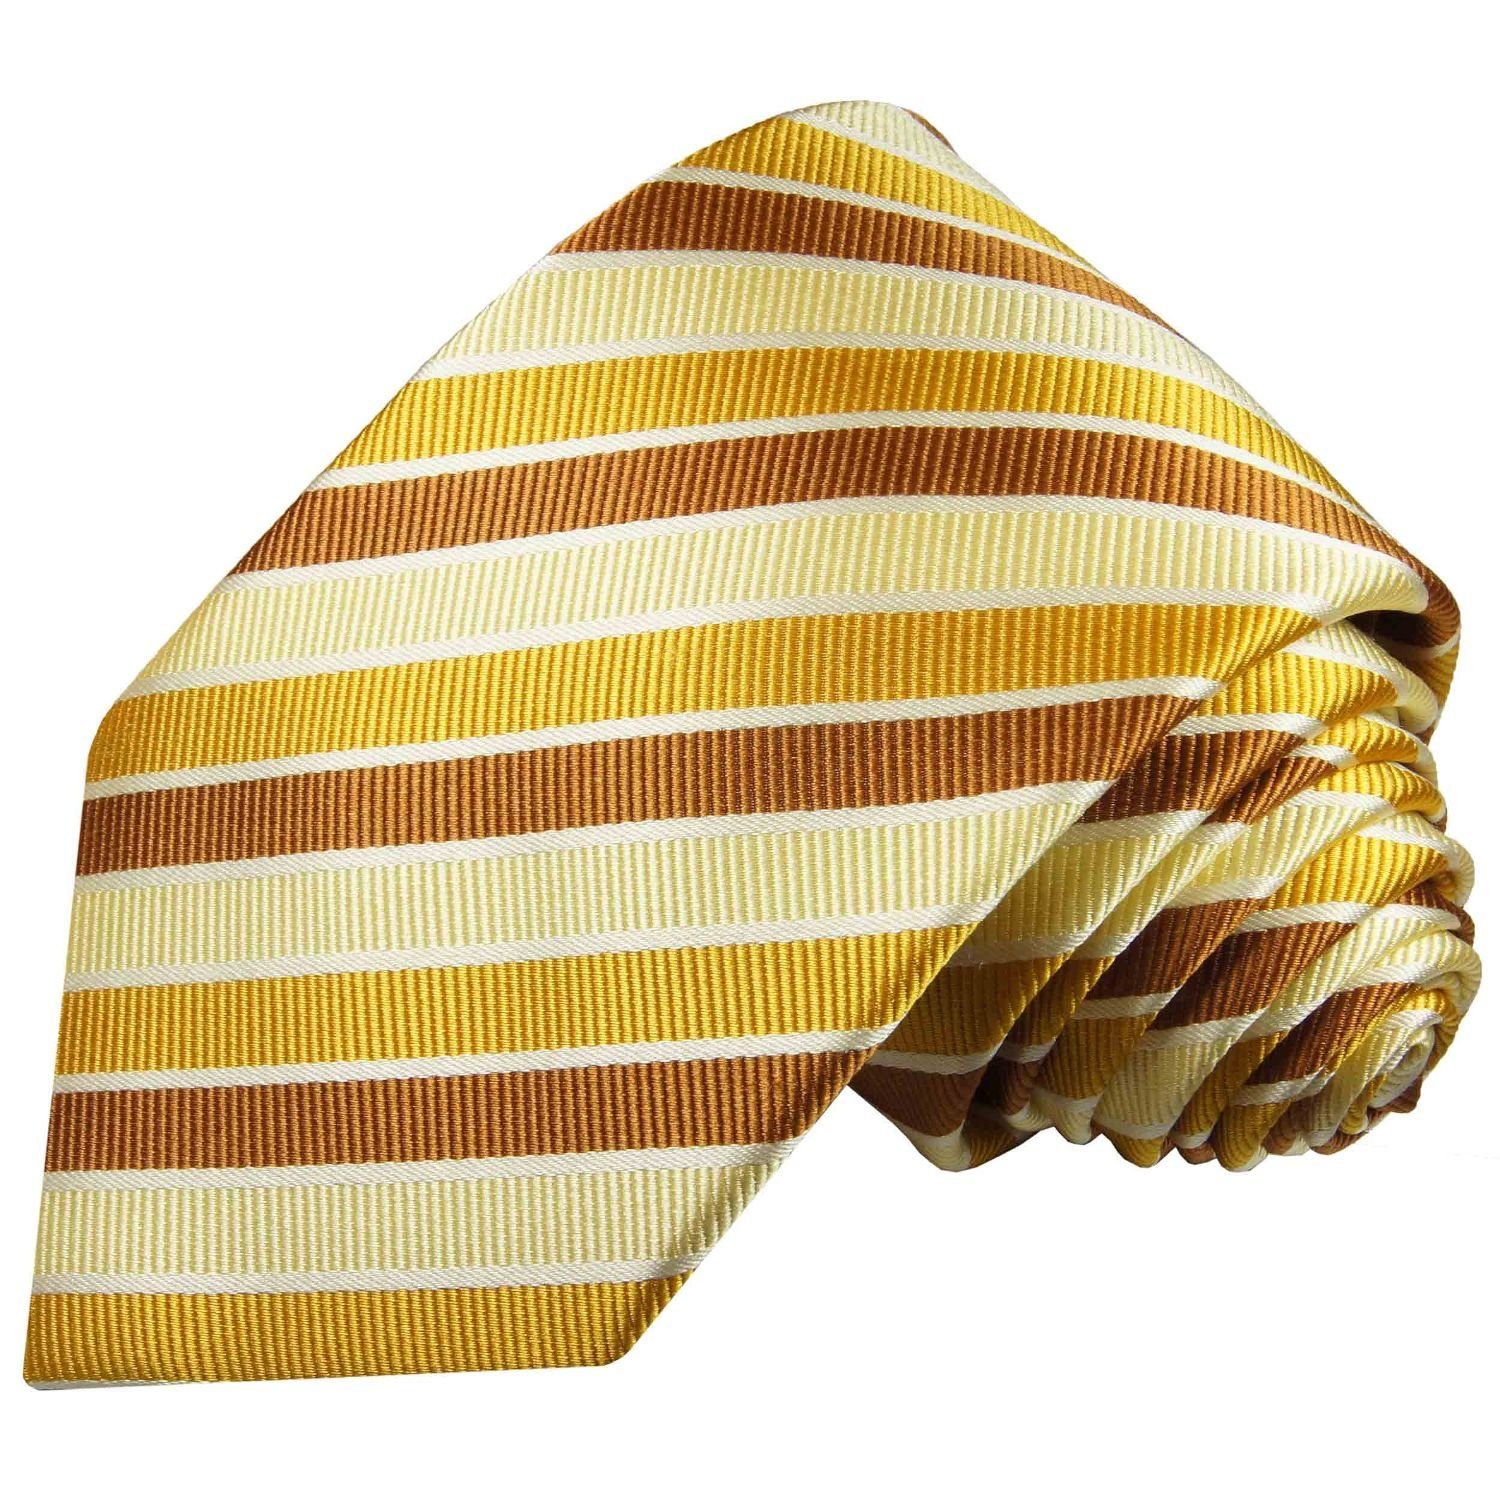 Paul Malone Krawatte Moderne Herren Seidenkrawatte gestreift 100% Seide Breit (8cm), gelb gold braun 272 | Breite Krawatten